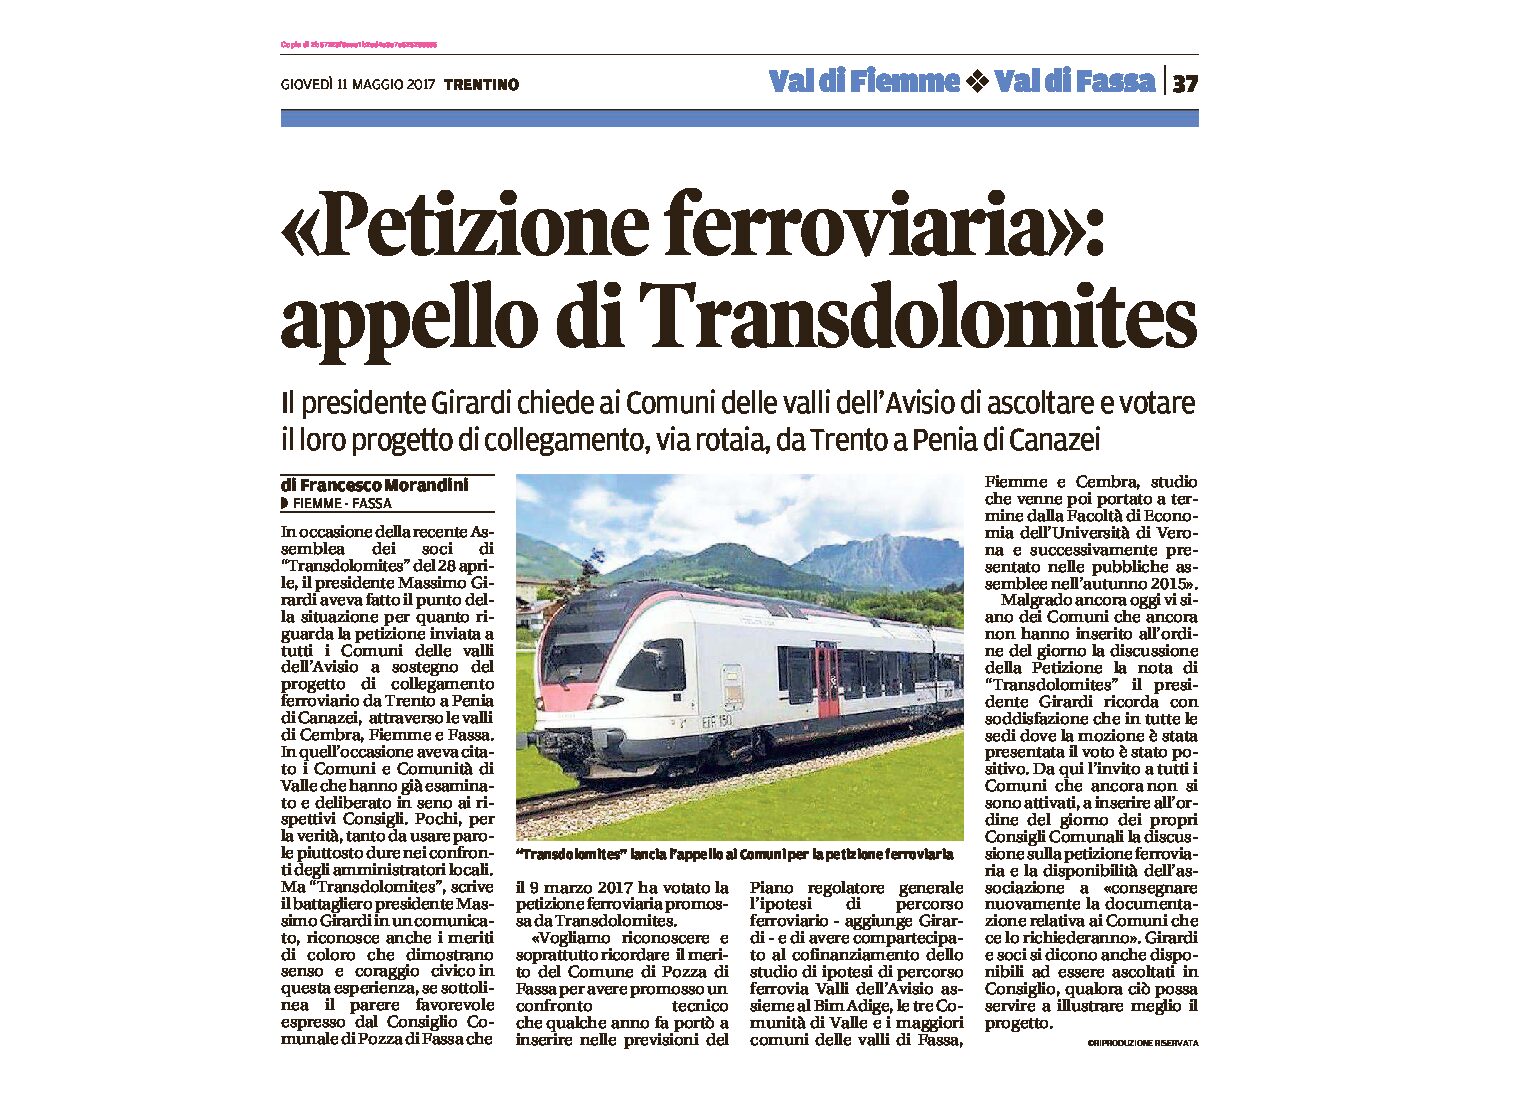 Transdolomites: chiede ai Comuni dell’Avisio di ascoltare e votare il progetto Trento-Penia